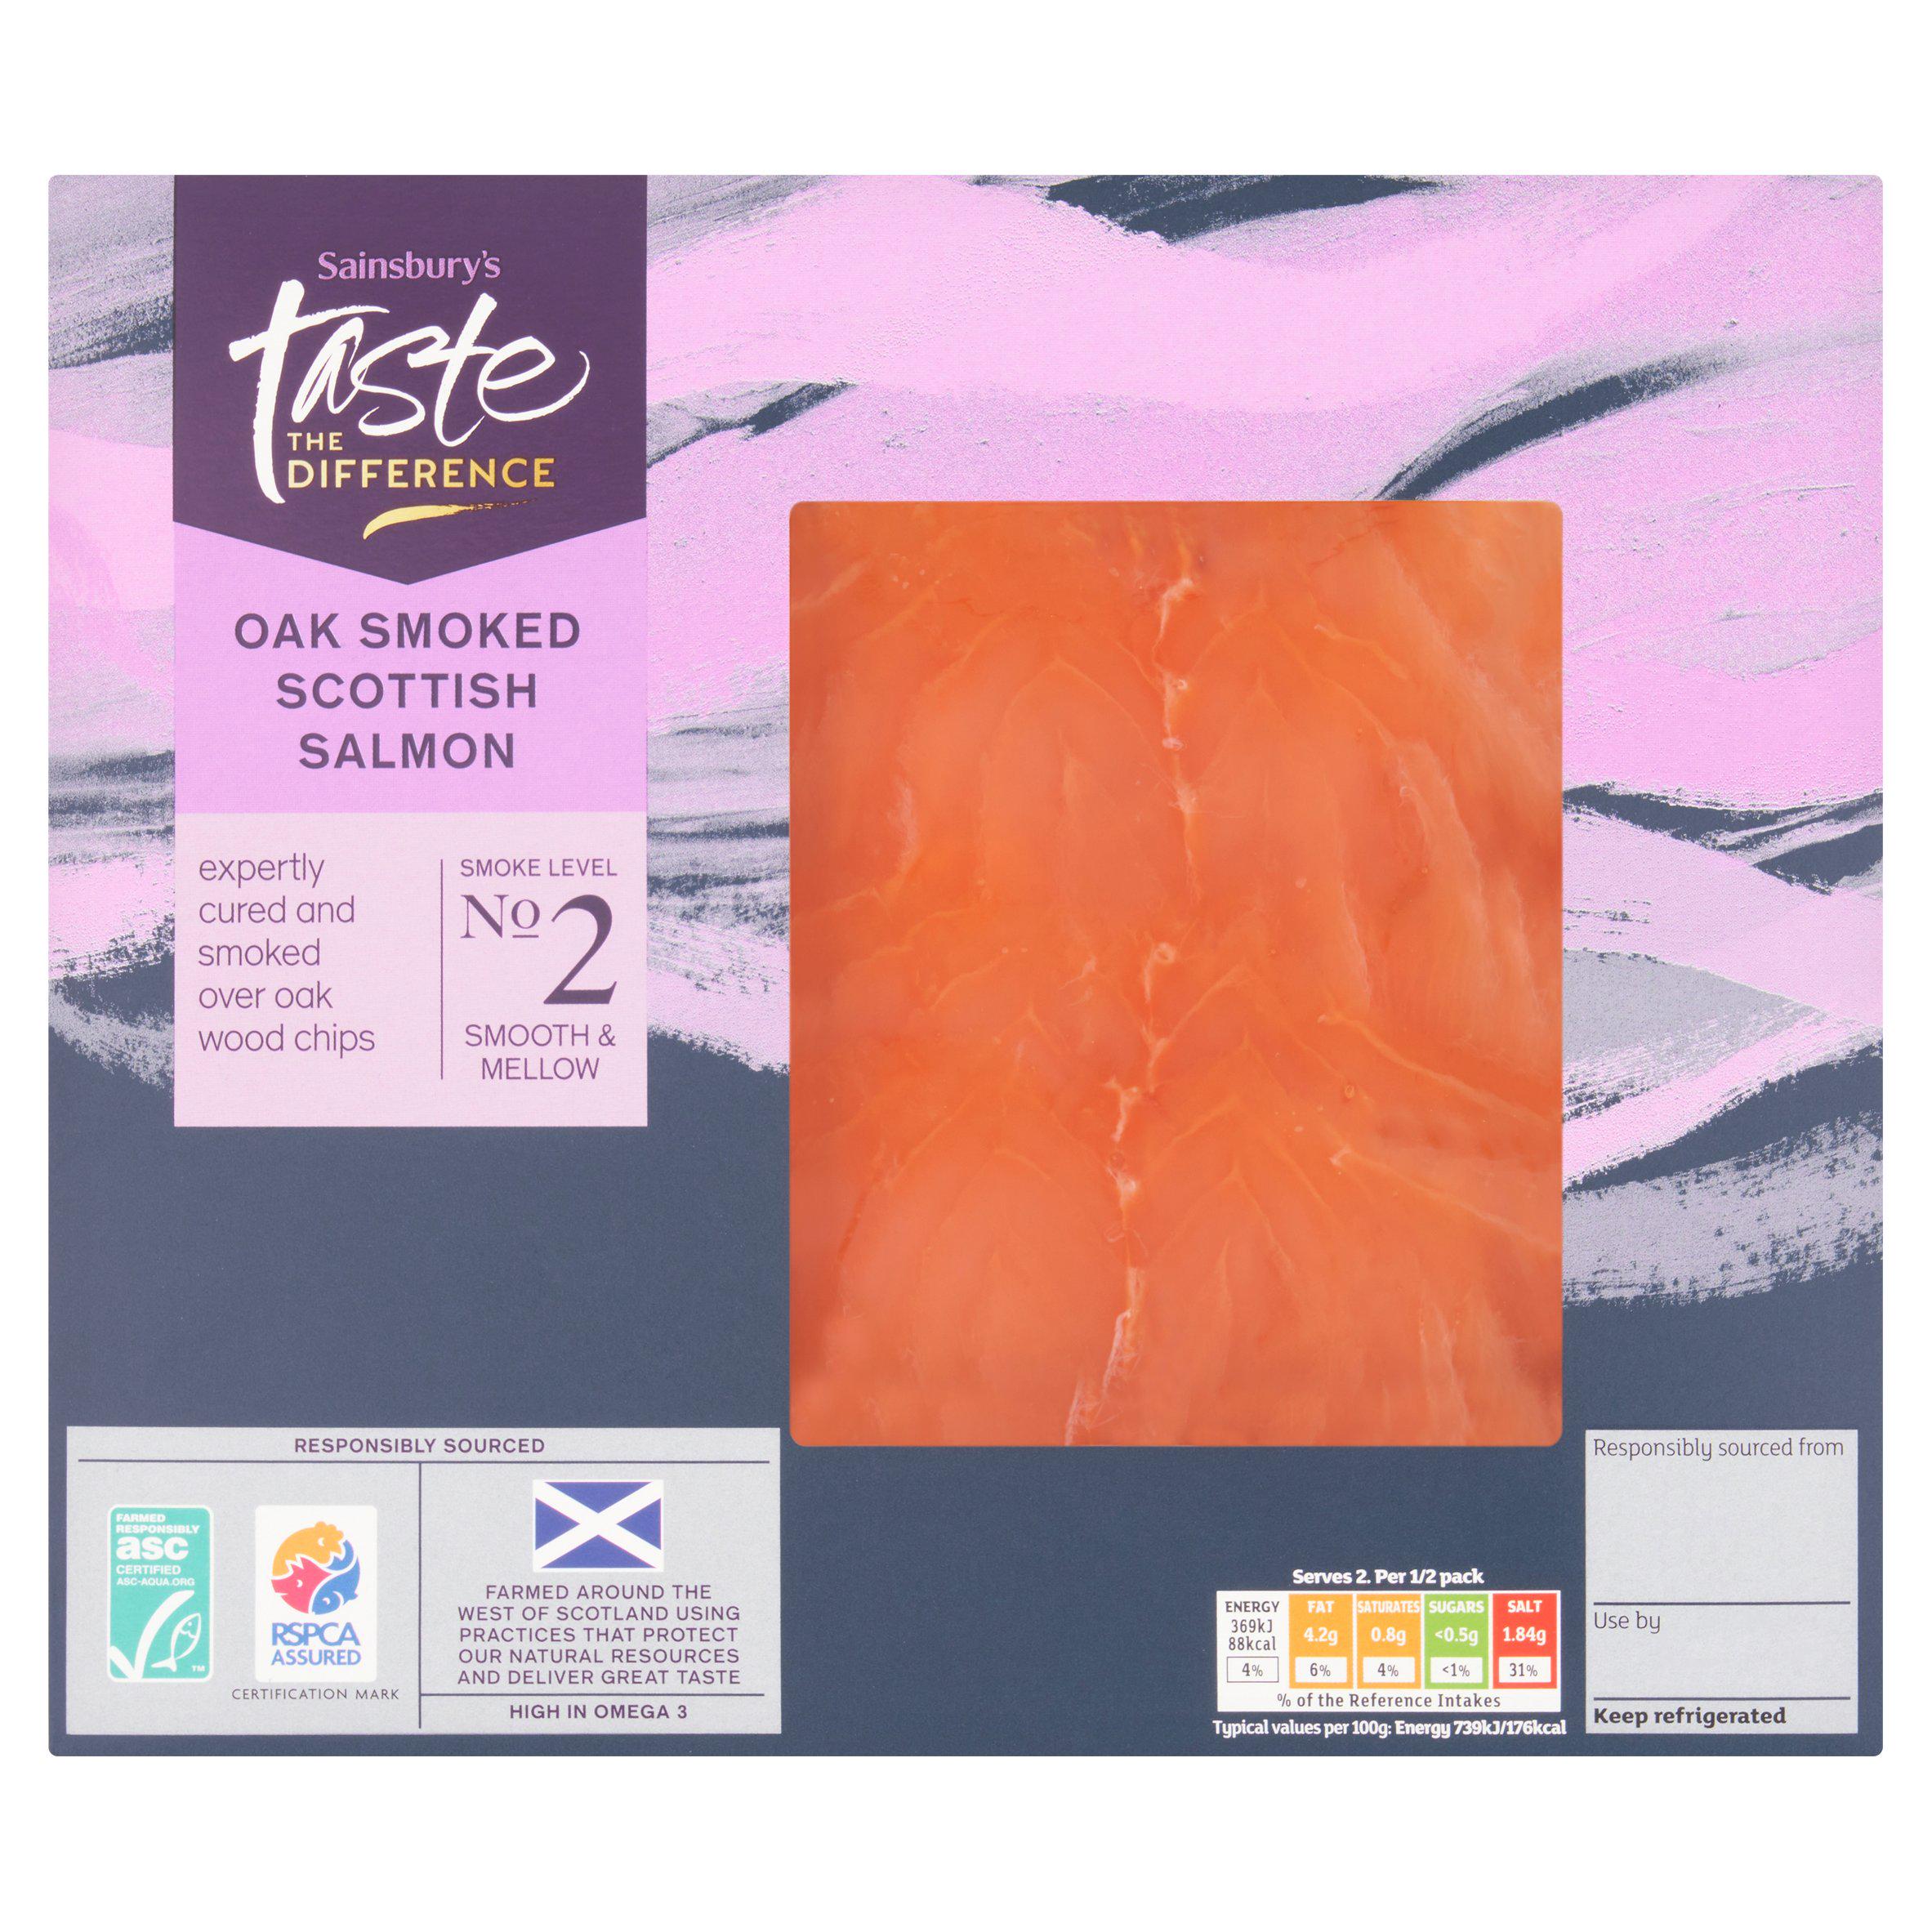 Sainsbury's ASC Oak Smoked Scottish Salmon, Taste the Difference